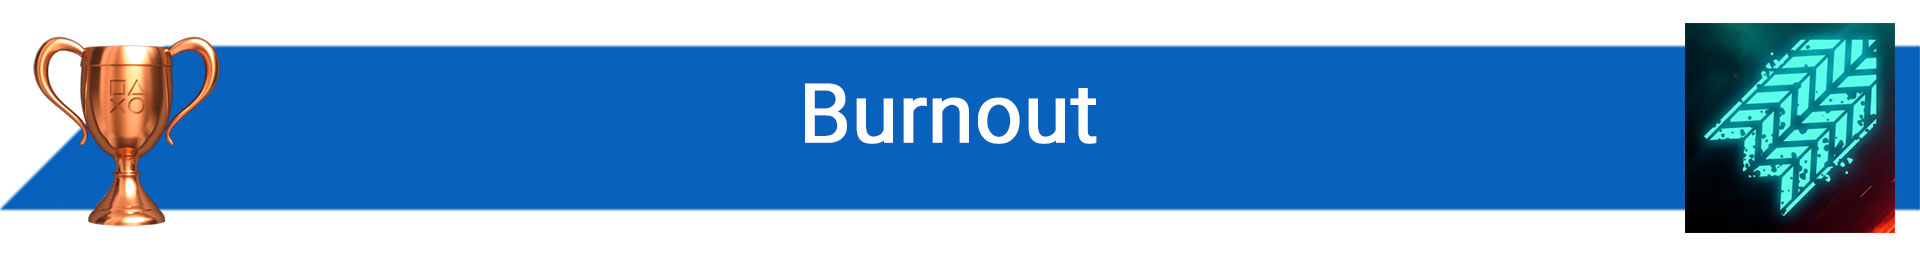 توضیح Burnout